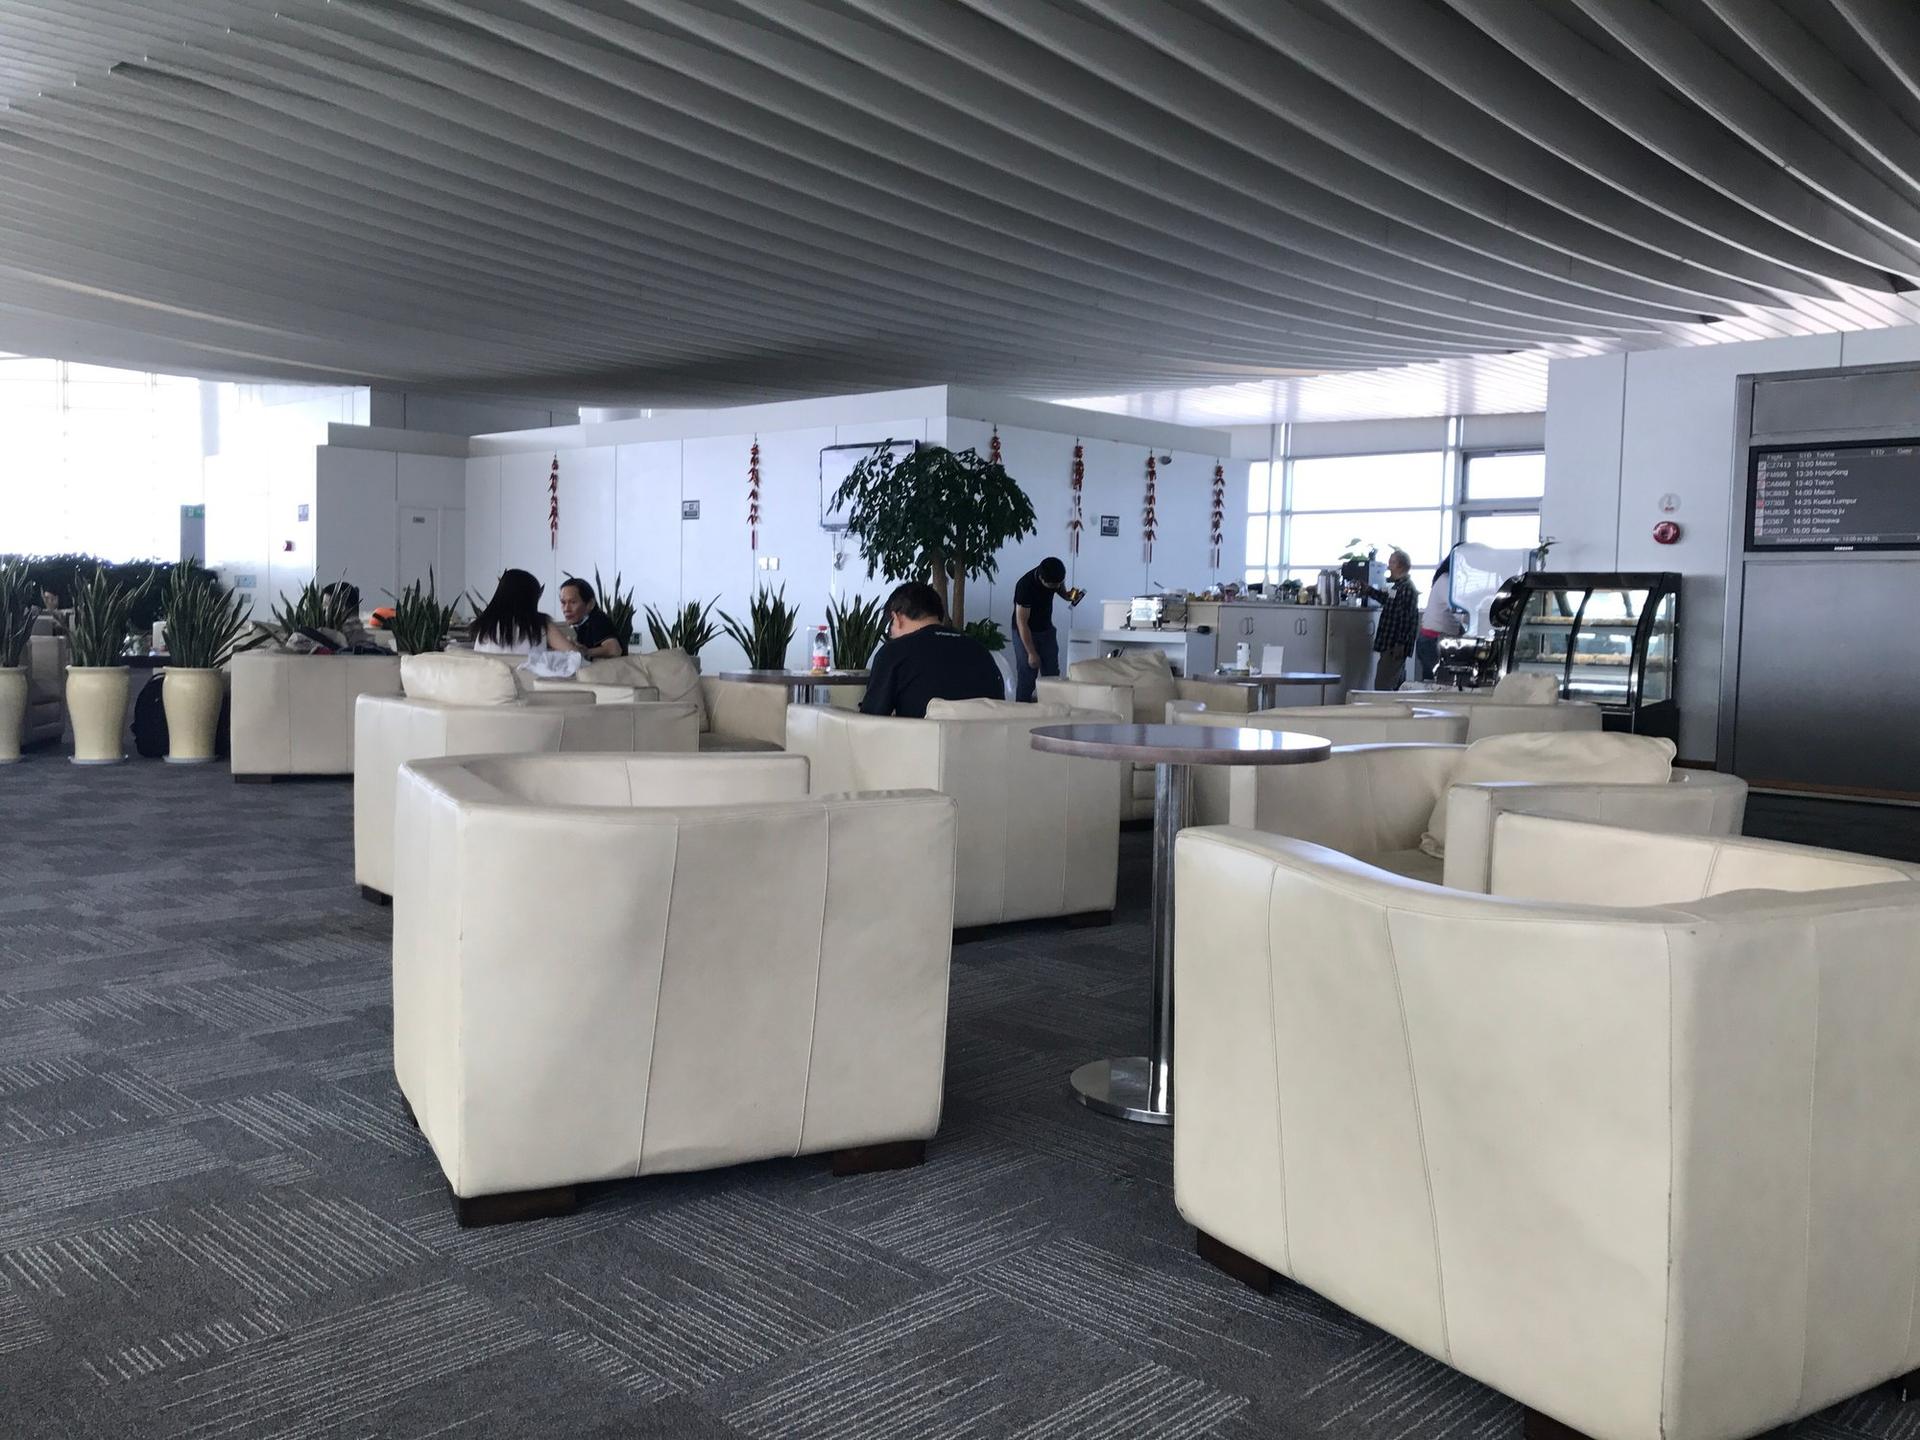 Hangzhou Xiaoshan Airport First Class Lounge image 3 of 8